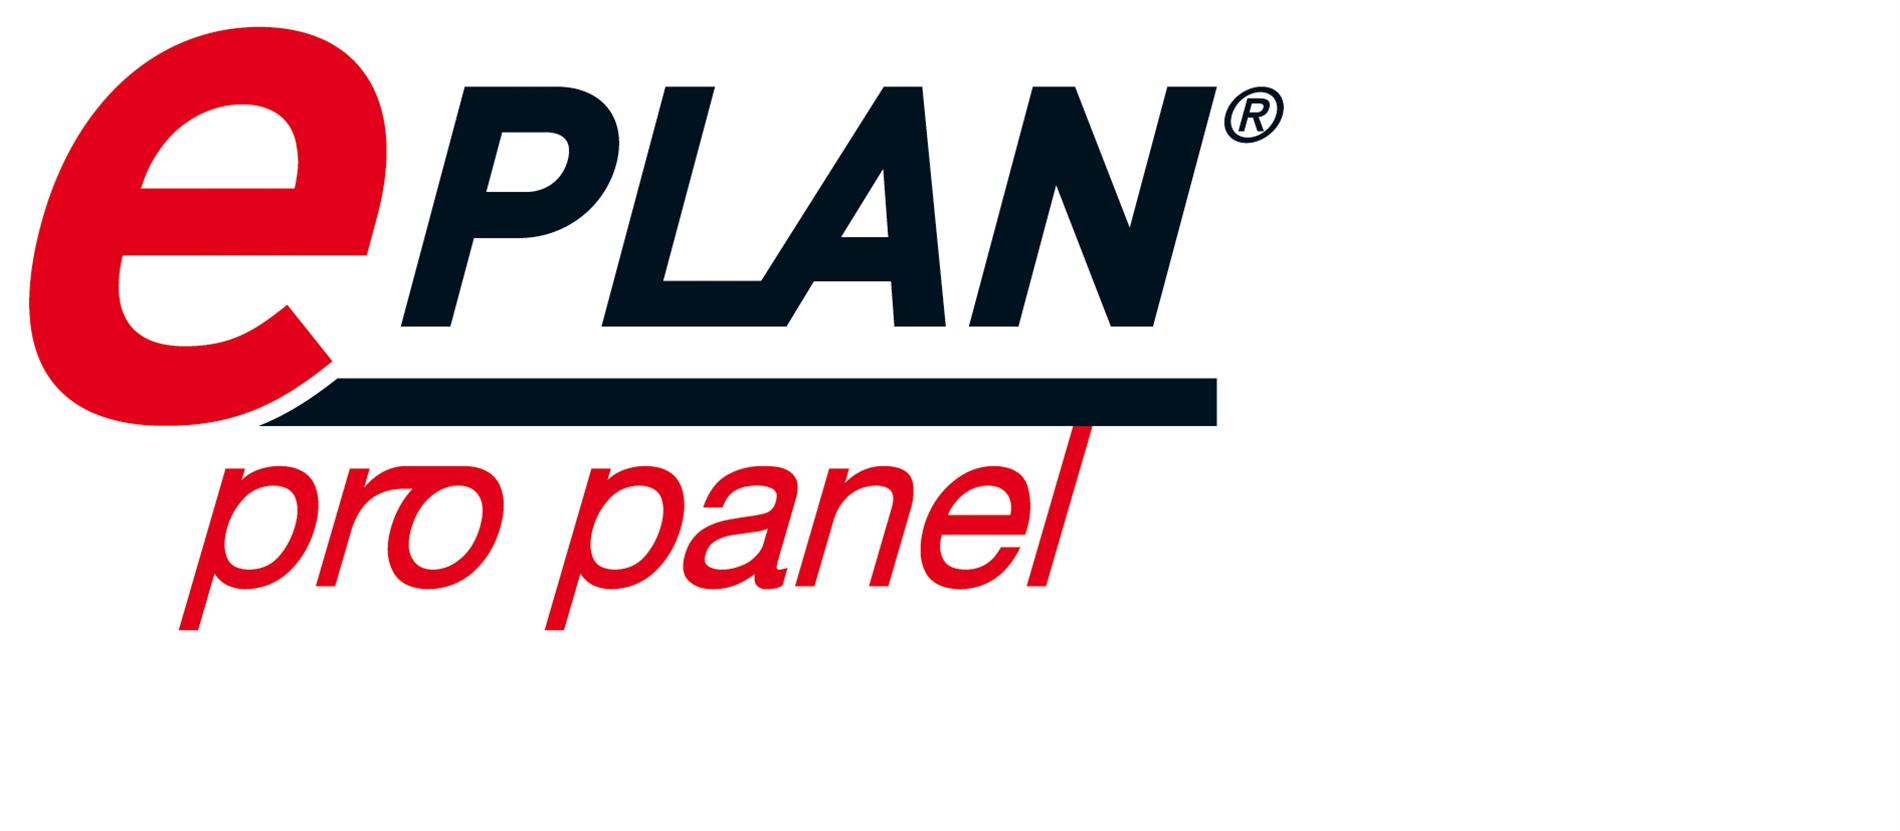 2012 08 31 Logo EPLAN Pro panel RGB